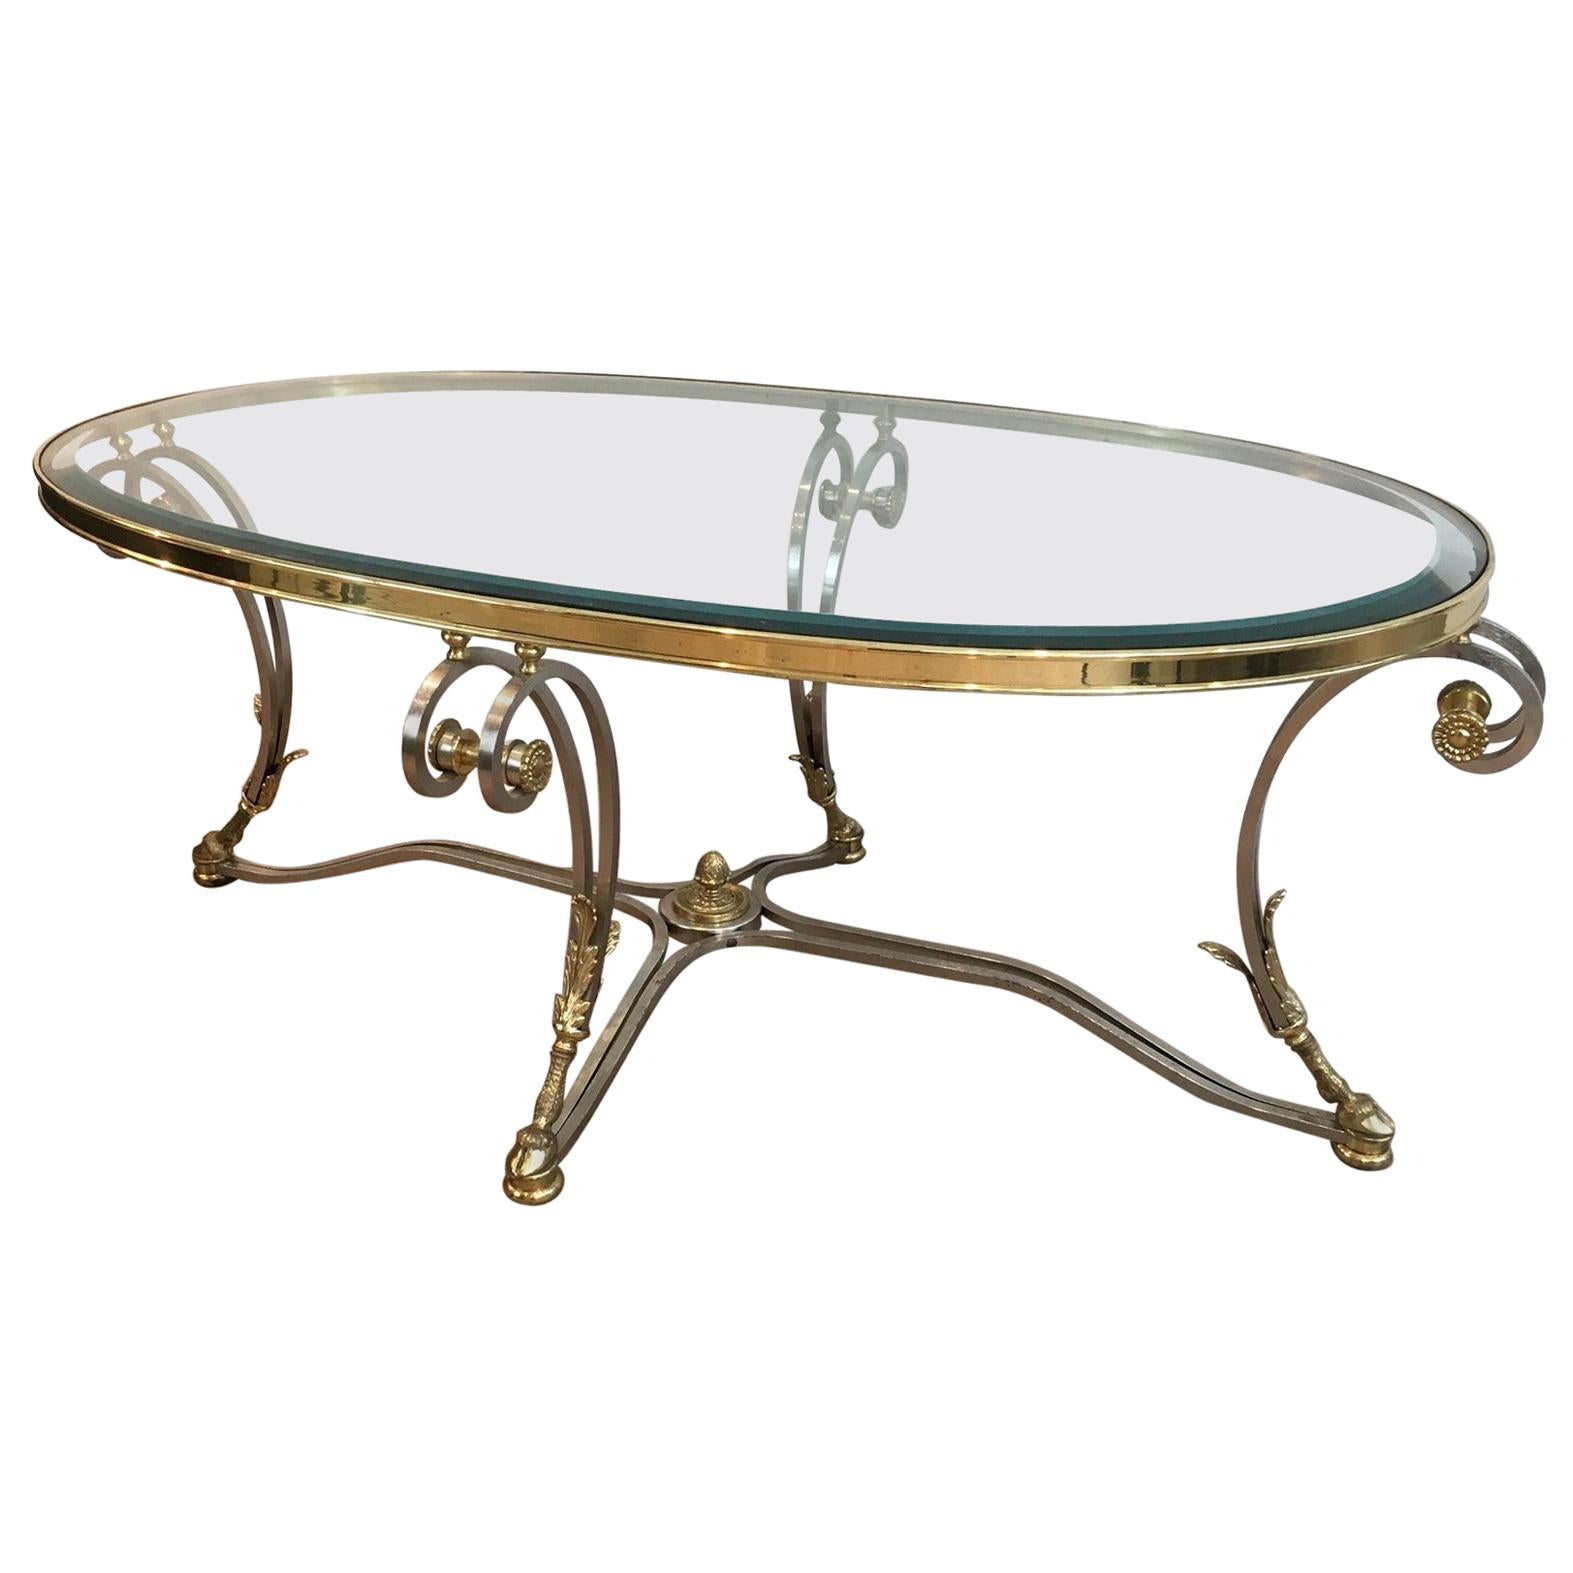 Magnifique table basse ovale en acier brossé et laiton de style néoclassique. Circa 1970